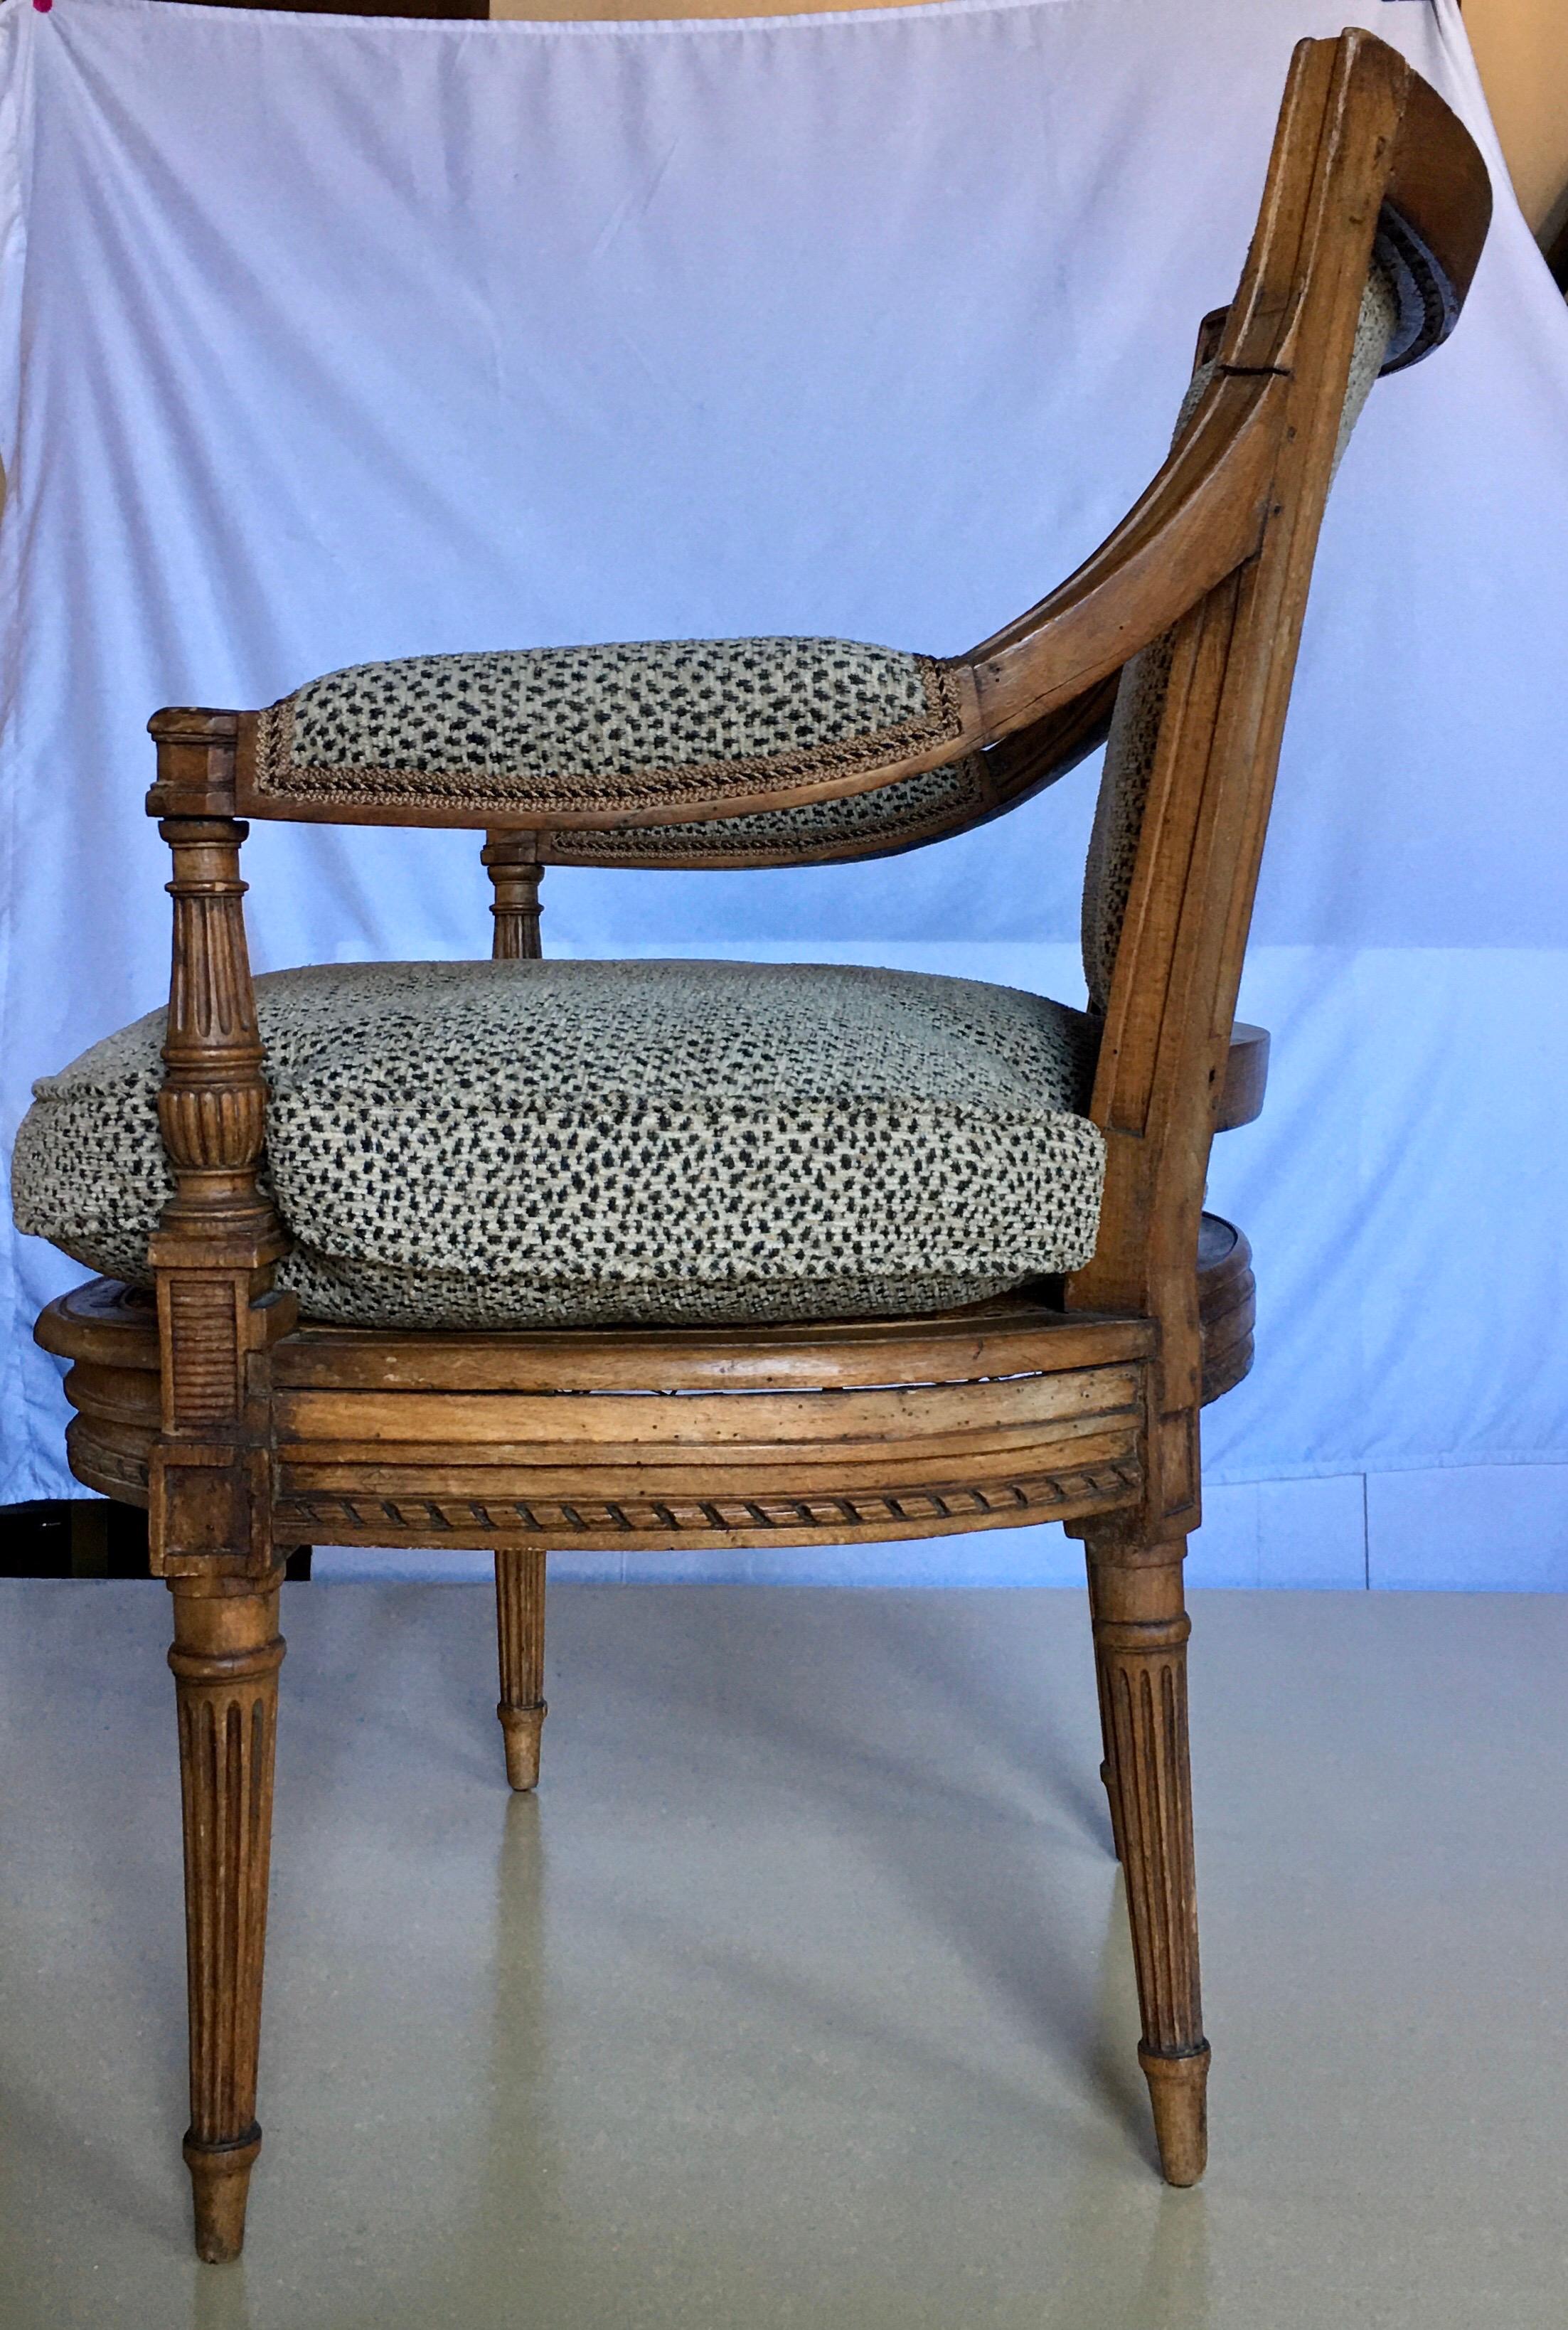 Fauteuil d'appoint français de style Louis XV à assise cannée, avec accoudoir et dossier tapissés et coussin d'assise en duvet d'oie. Nouvellement retapissé dans un tissu imprimé animal de Kravet. Cette chaise Fauteuil en bois magnifiquement sculpté